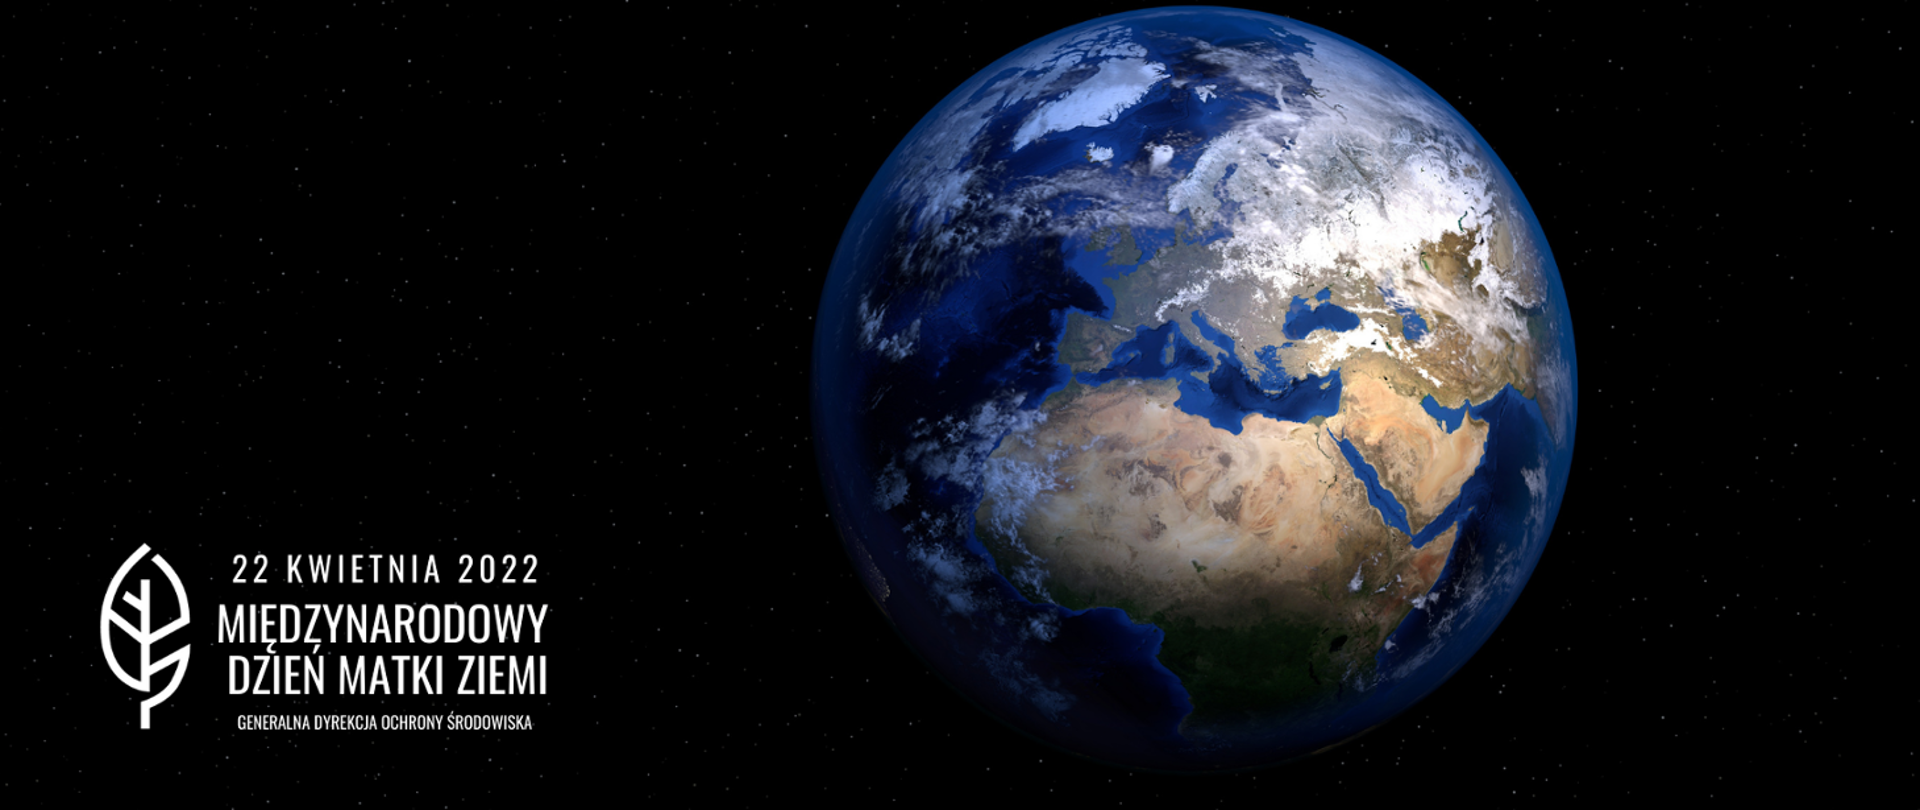 Czarne tło. Na środku kula, ziemska. Widoczne żółte lądy i niebieska woda. W lewym dolnym rogu napis 22 kwietnia 2022 Międzynarodowy Dzień Matki Ziemi oraz logo Generalnej Dyrekcji Ochrony Środowiska (biały liść).